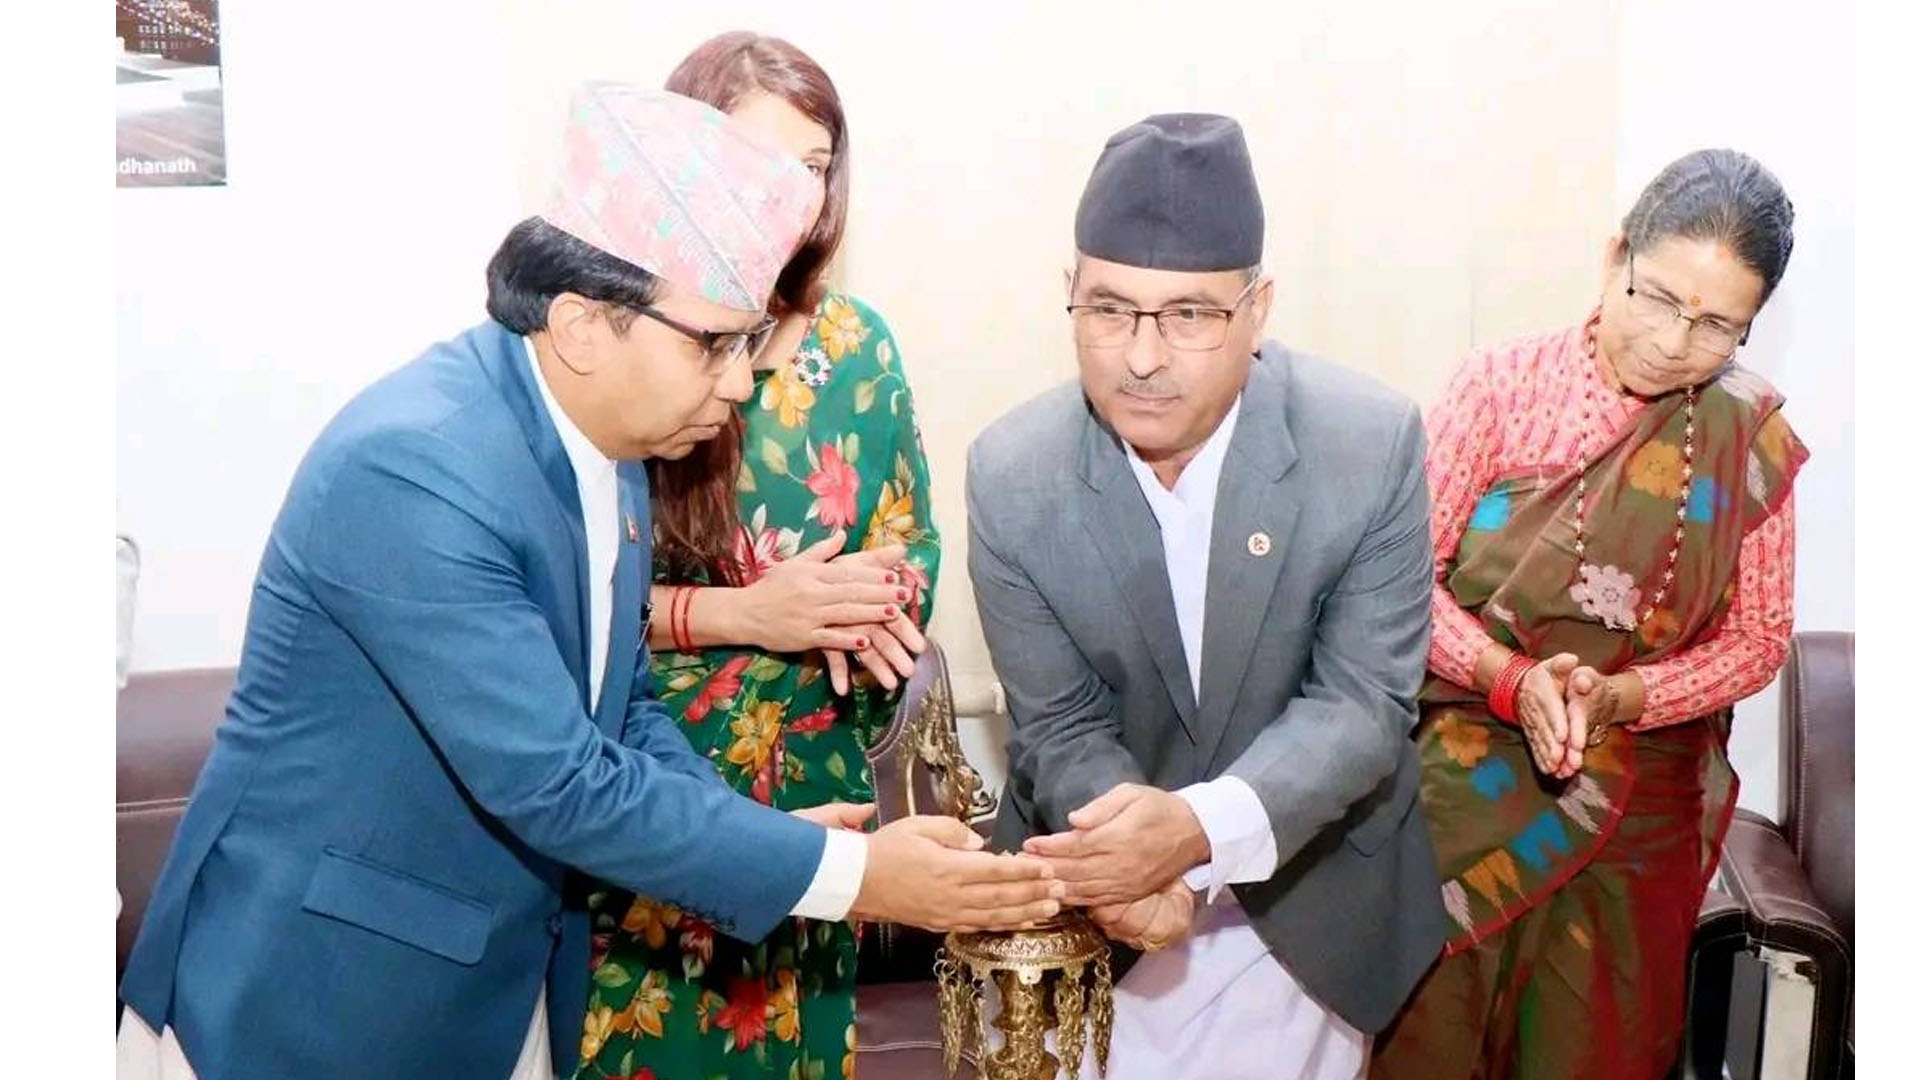 नेपाली राजदूतावास कतारले एक भव्य कार्यक्रमबीच मनायो संविधान दिवस